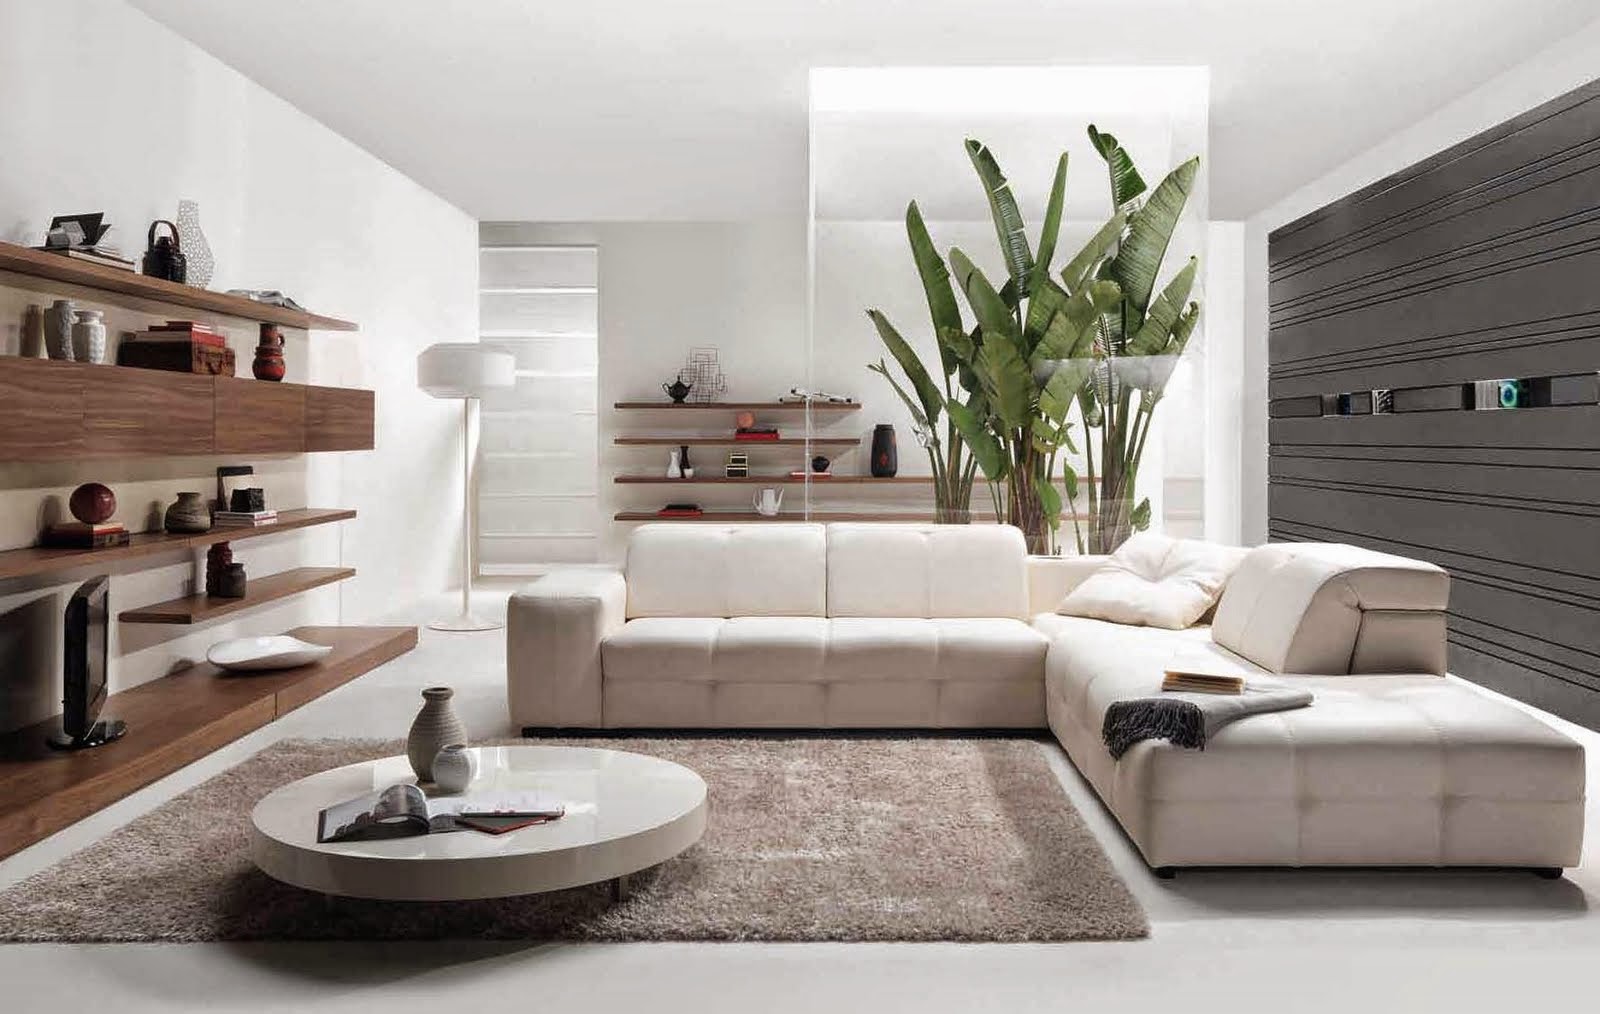 Desain Interior Rumah Minimalis Terbaru 2015 Ide Desain Rumah